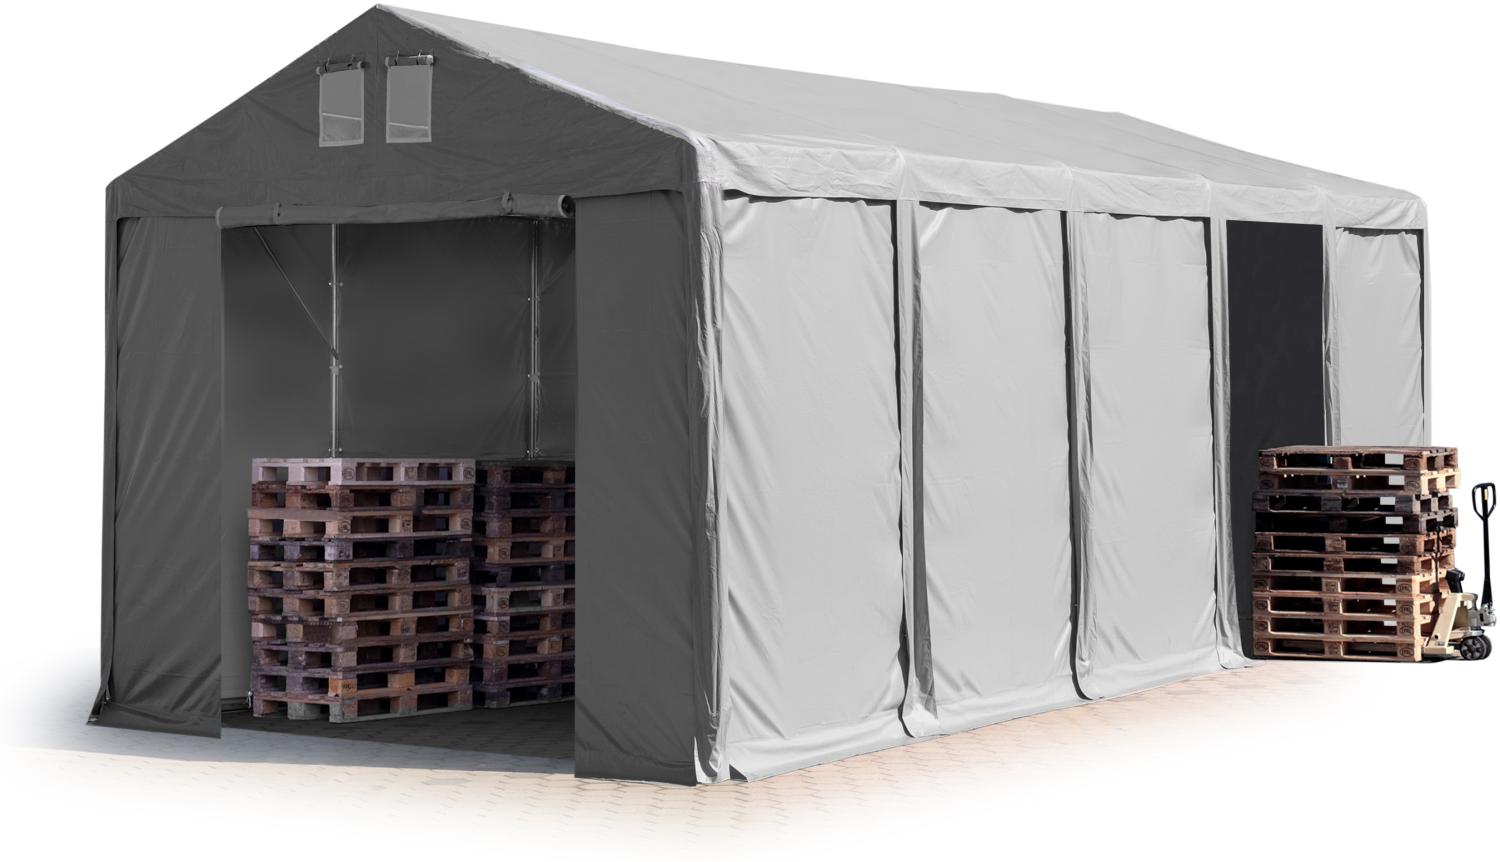 Lagerzelt 4x10 m Zelthalle Industriezelt mit 3m Seitenhöhe PVC Plane 850 N grau 100% wasserdicht Ganzjahreszelt mit Reißverschlusstor Bild 1